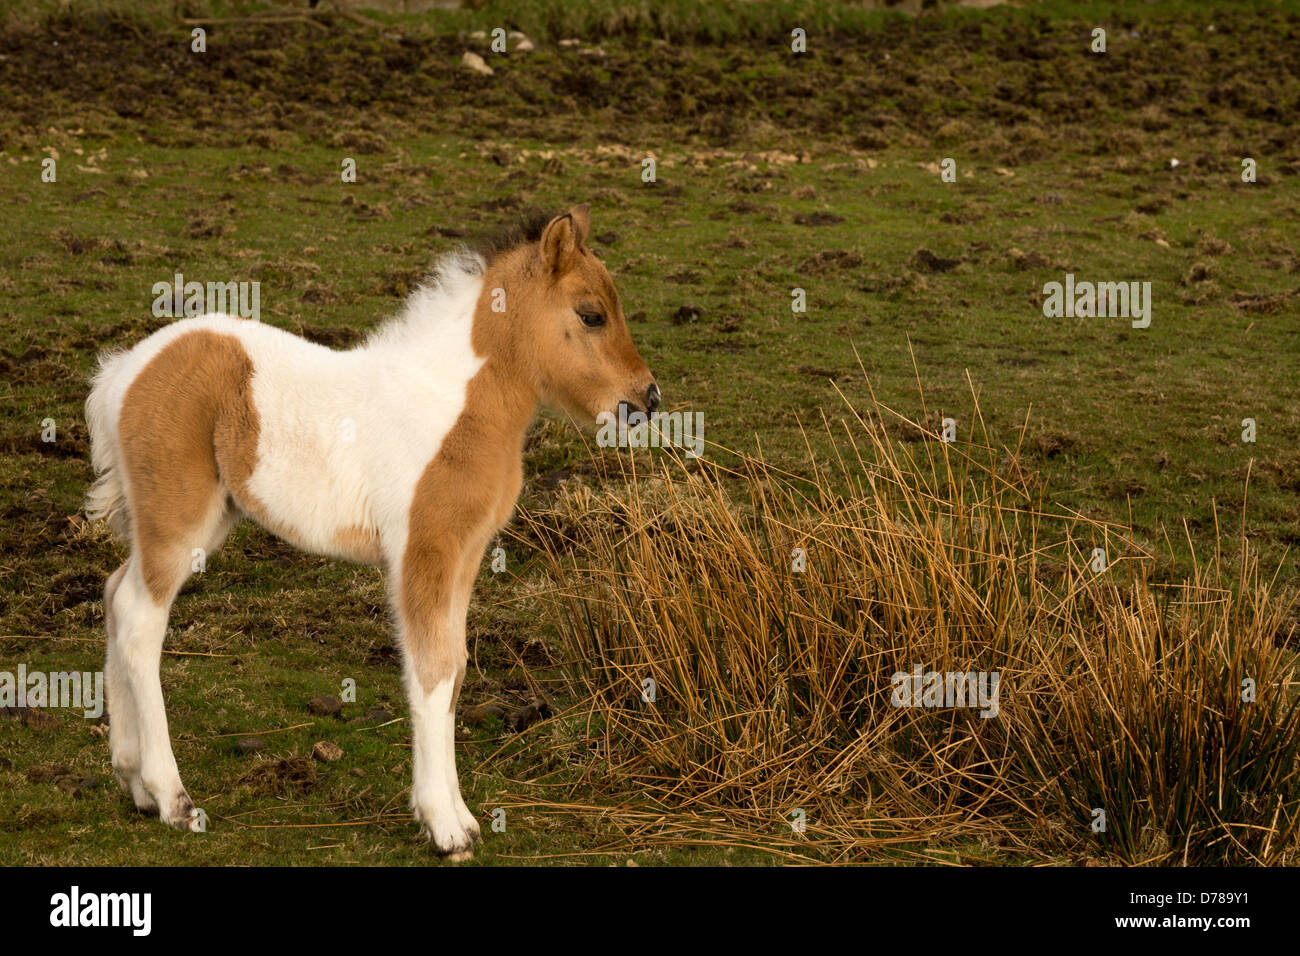 Young foal Dartmoor national park Devon Uk Stock Photo